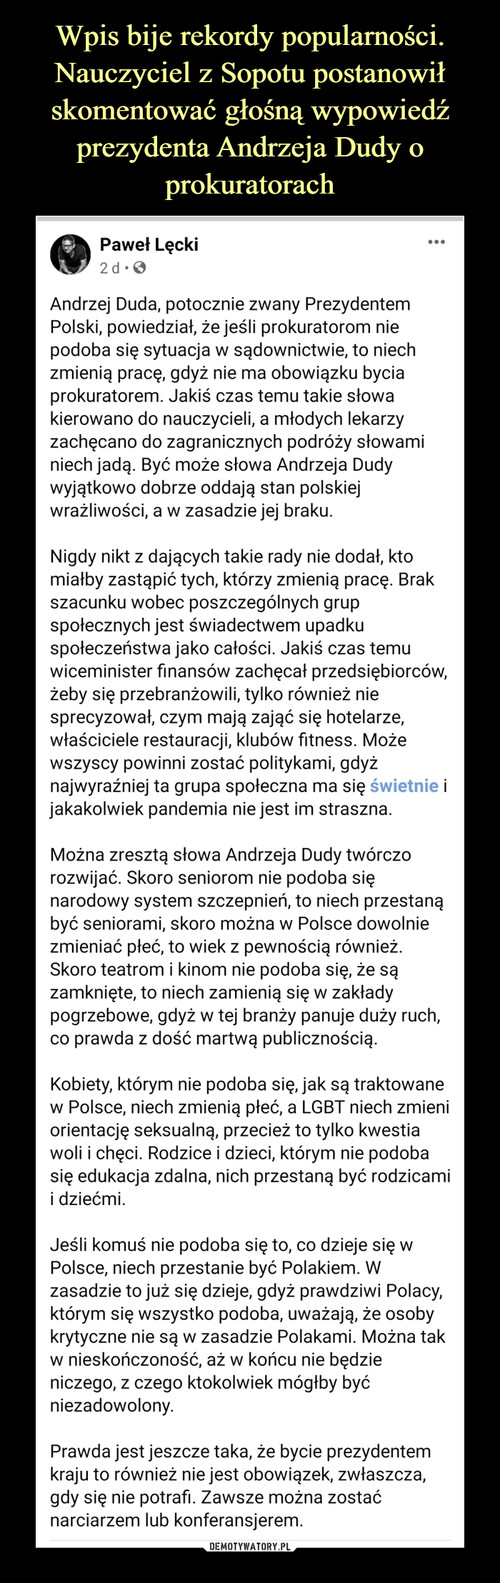 Wpis bije rekordy popularności. Nauczyciel z Sopotu postanowił skomentować głośną wypowiedź prezydenta Andrzeja Dudy o prokuratorach